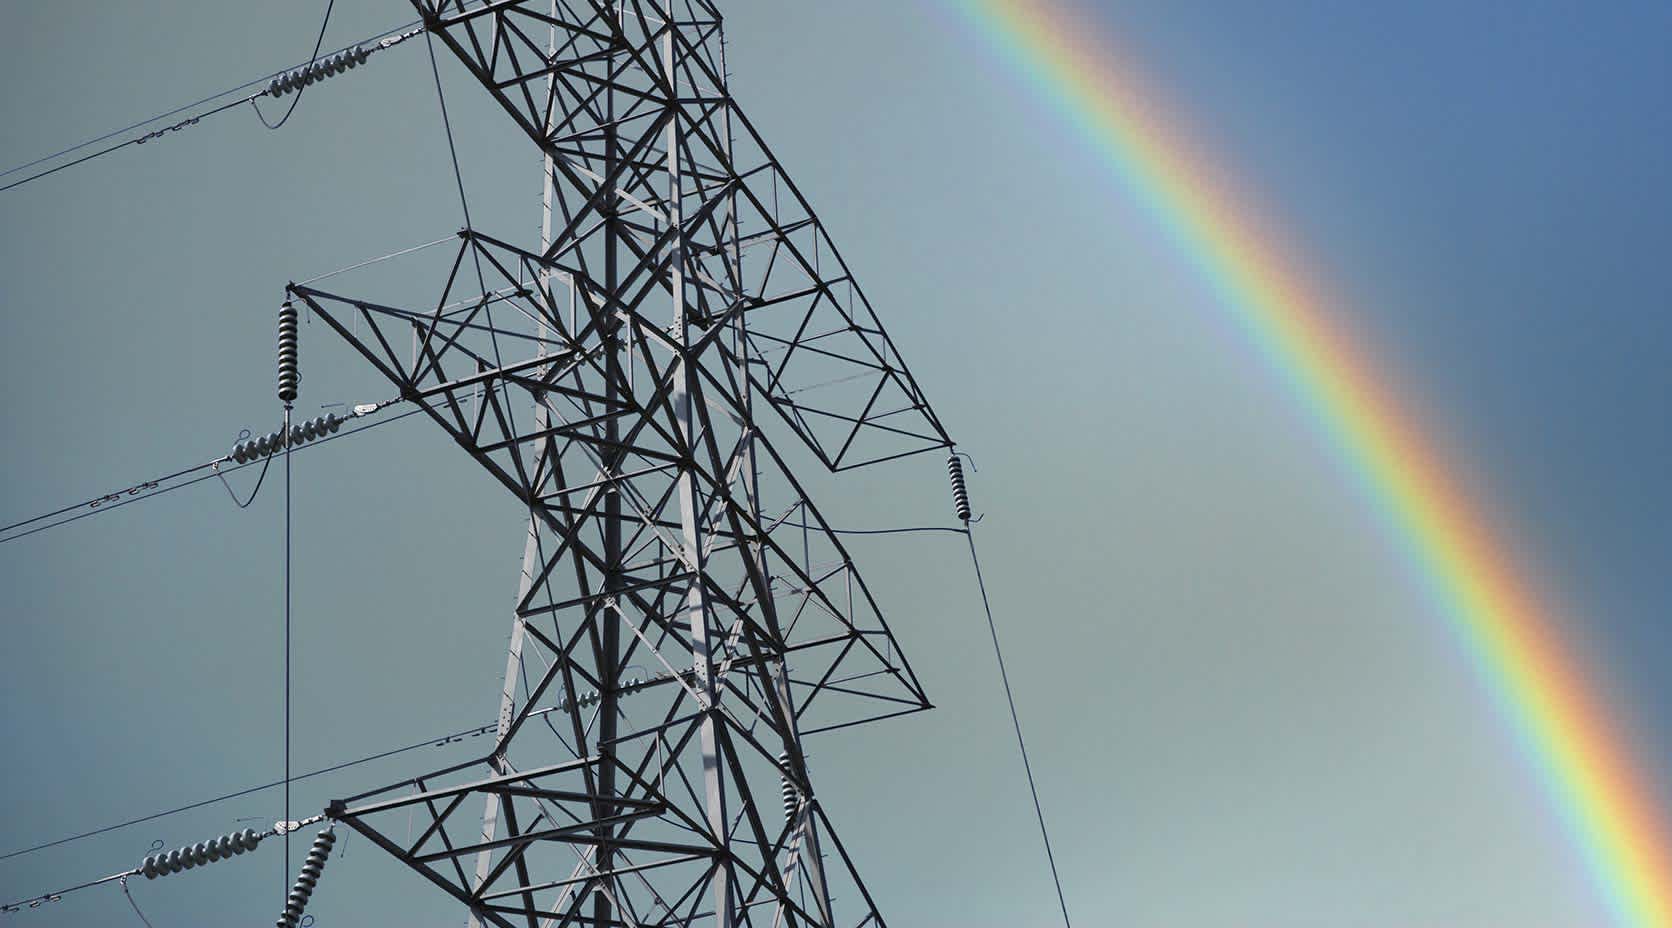 Strommast mit Regenbogen im Hintergrund